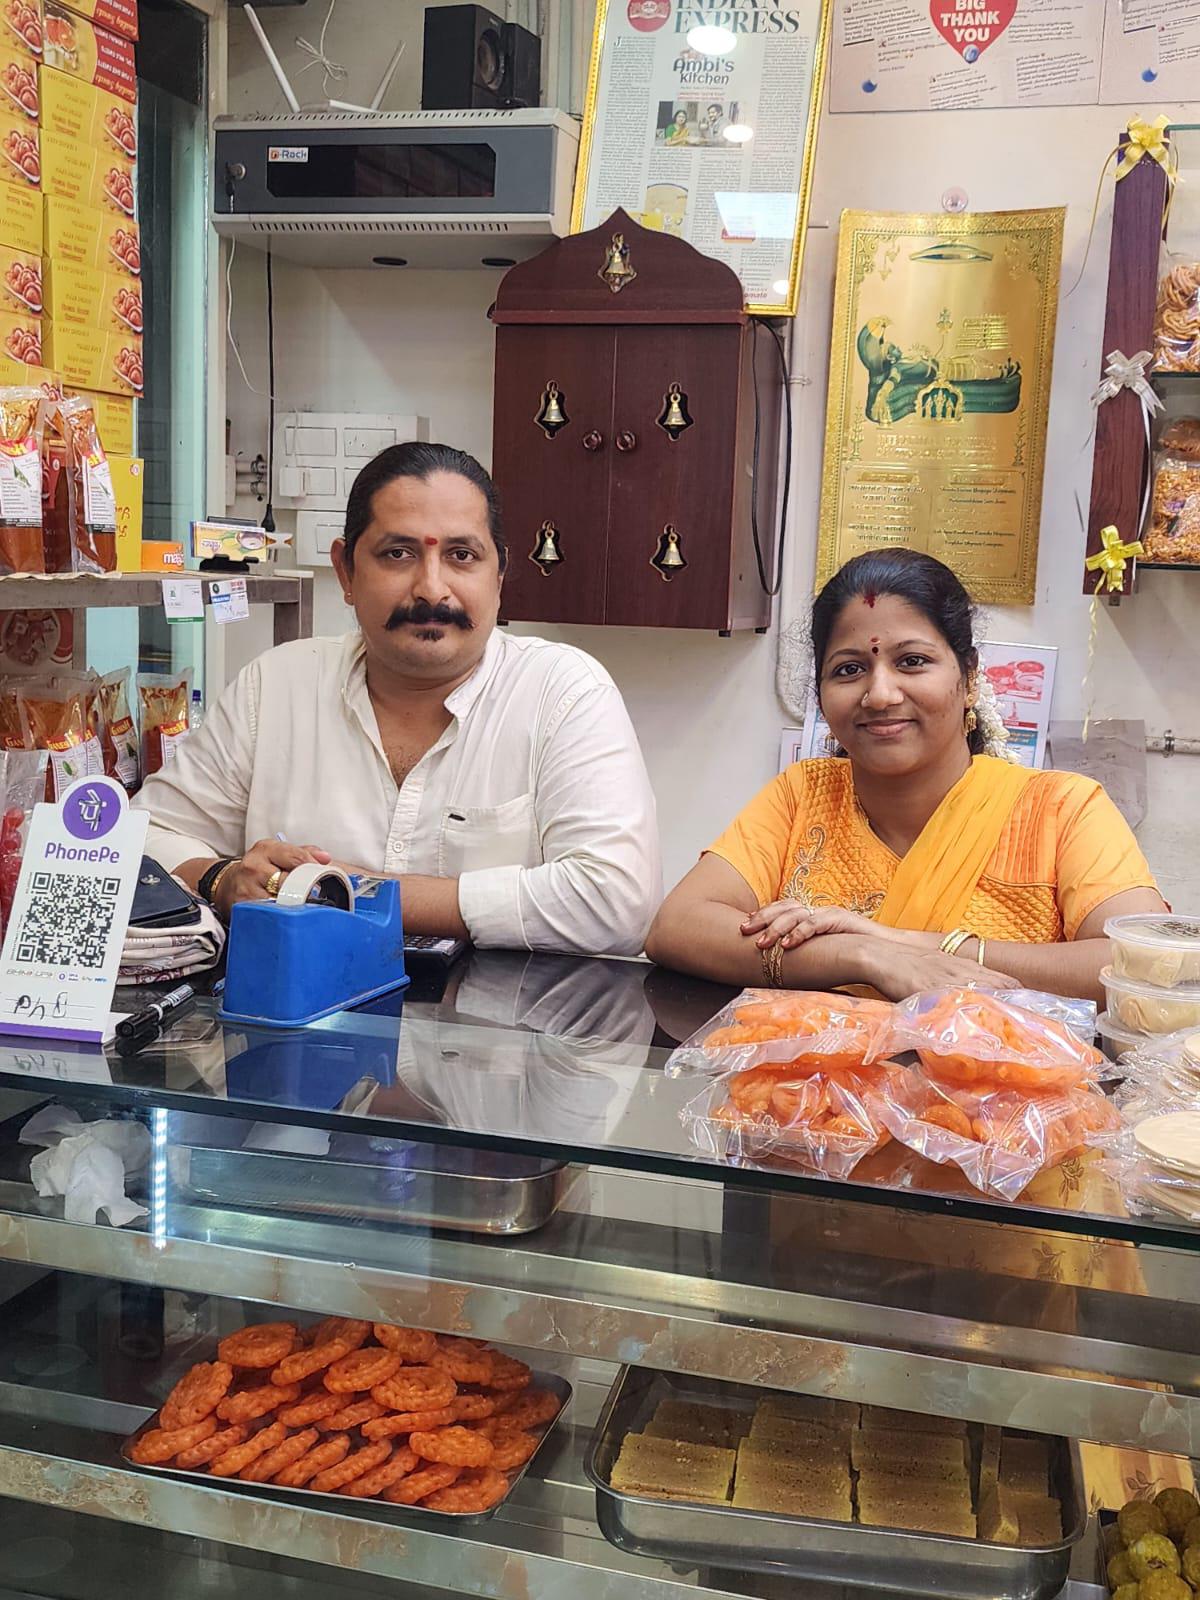 Mahesh Sivaraman and wife Bindu Mahesh who run Ambi's Kitchen